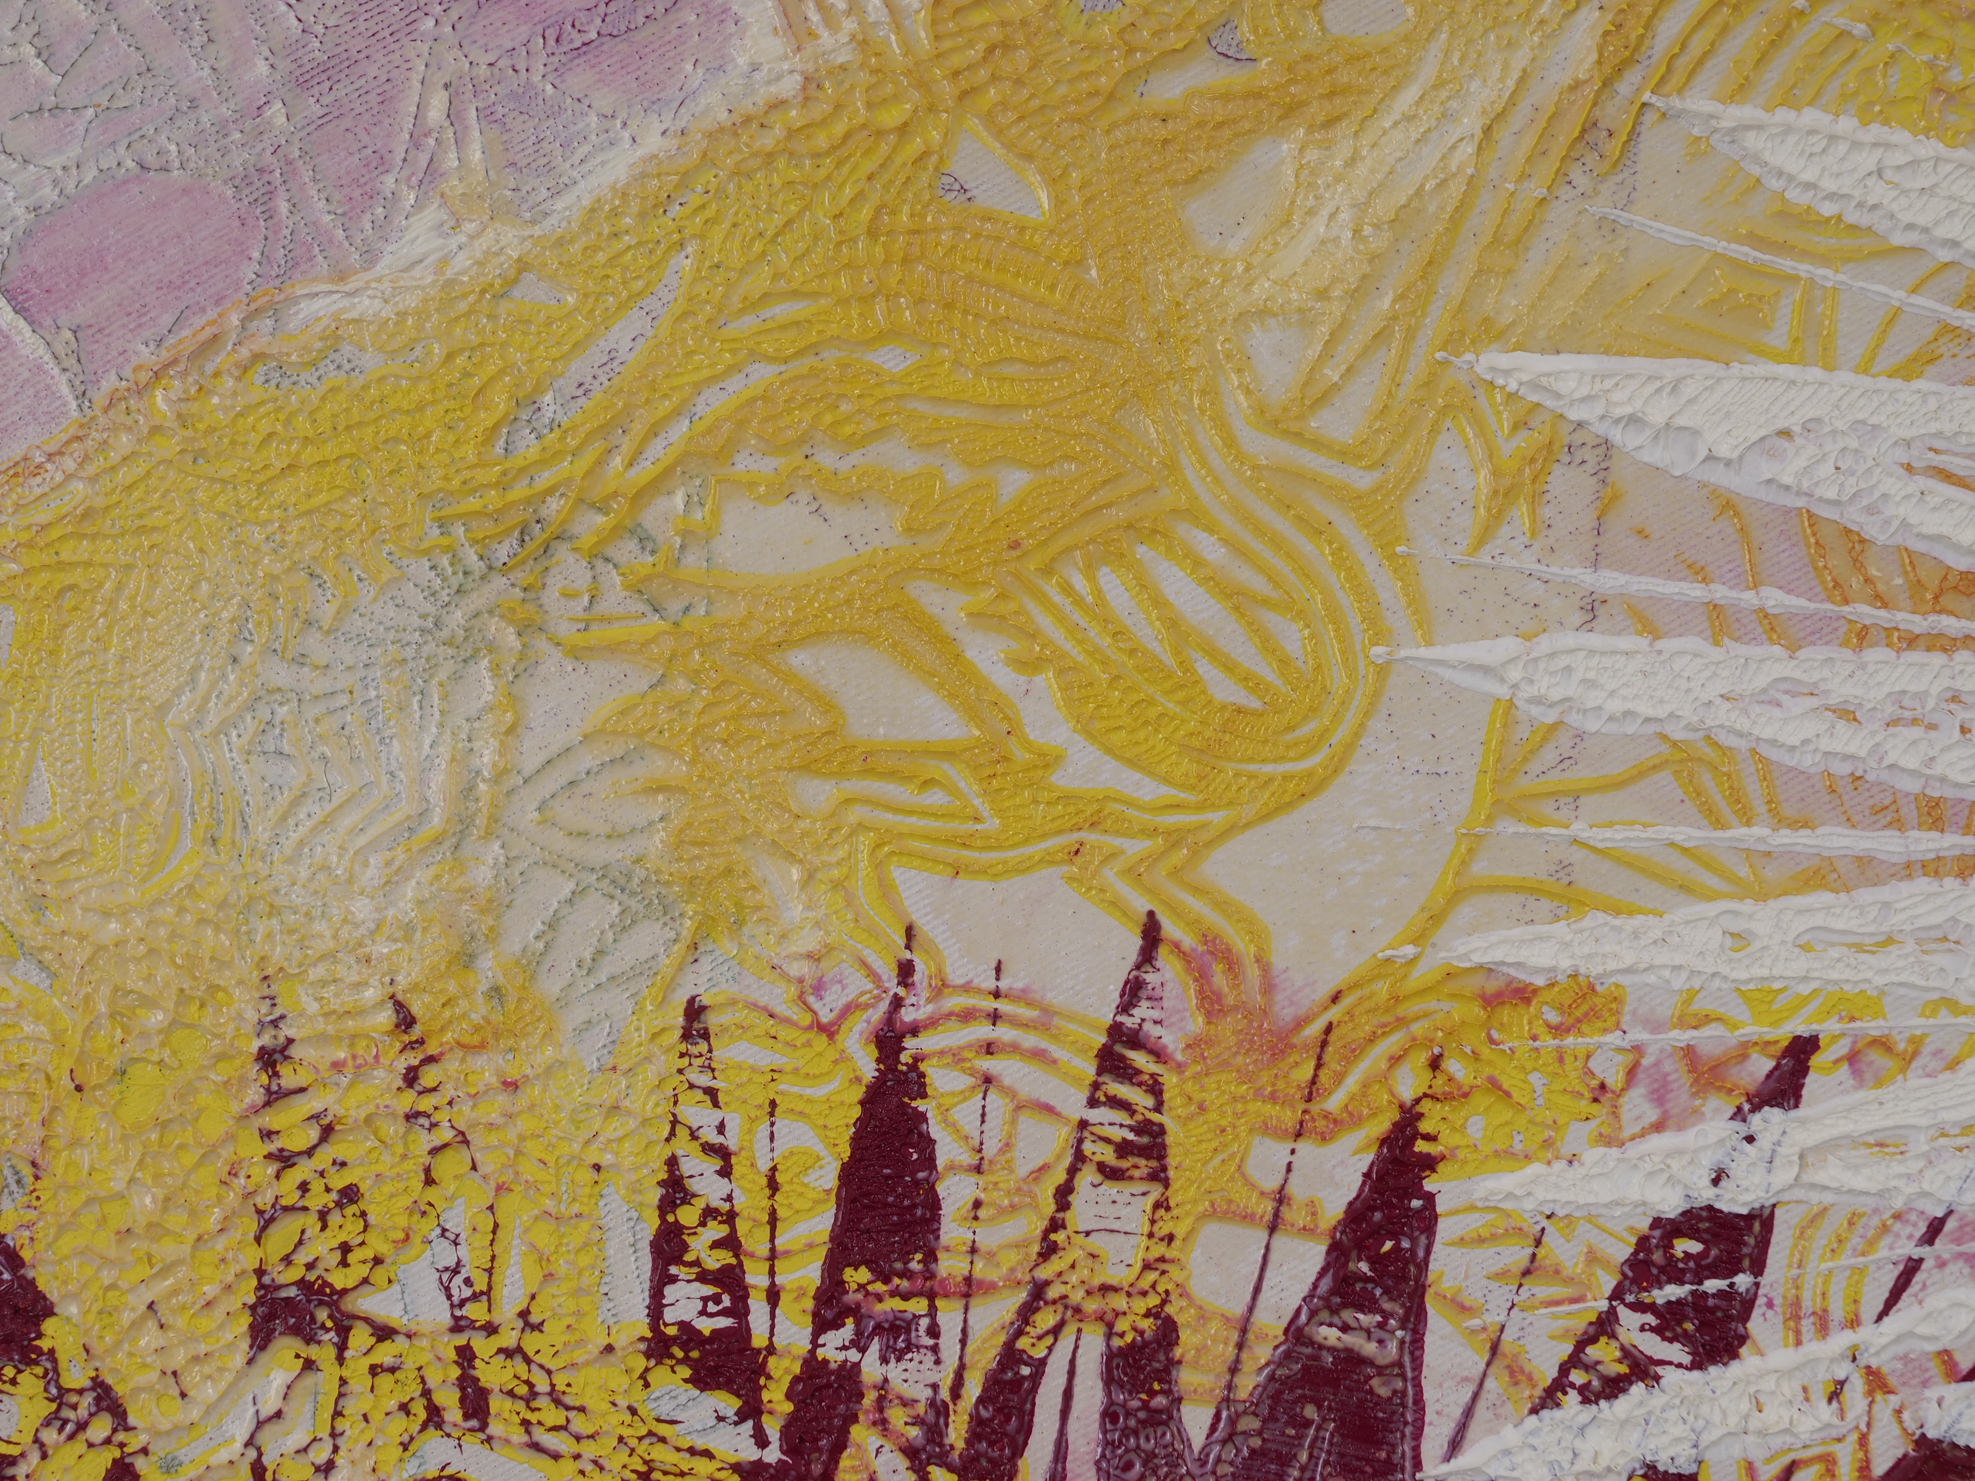 "Mitte des Lebens", 2014, Detail, Öl auf Leinwand, 170 x 170 cm